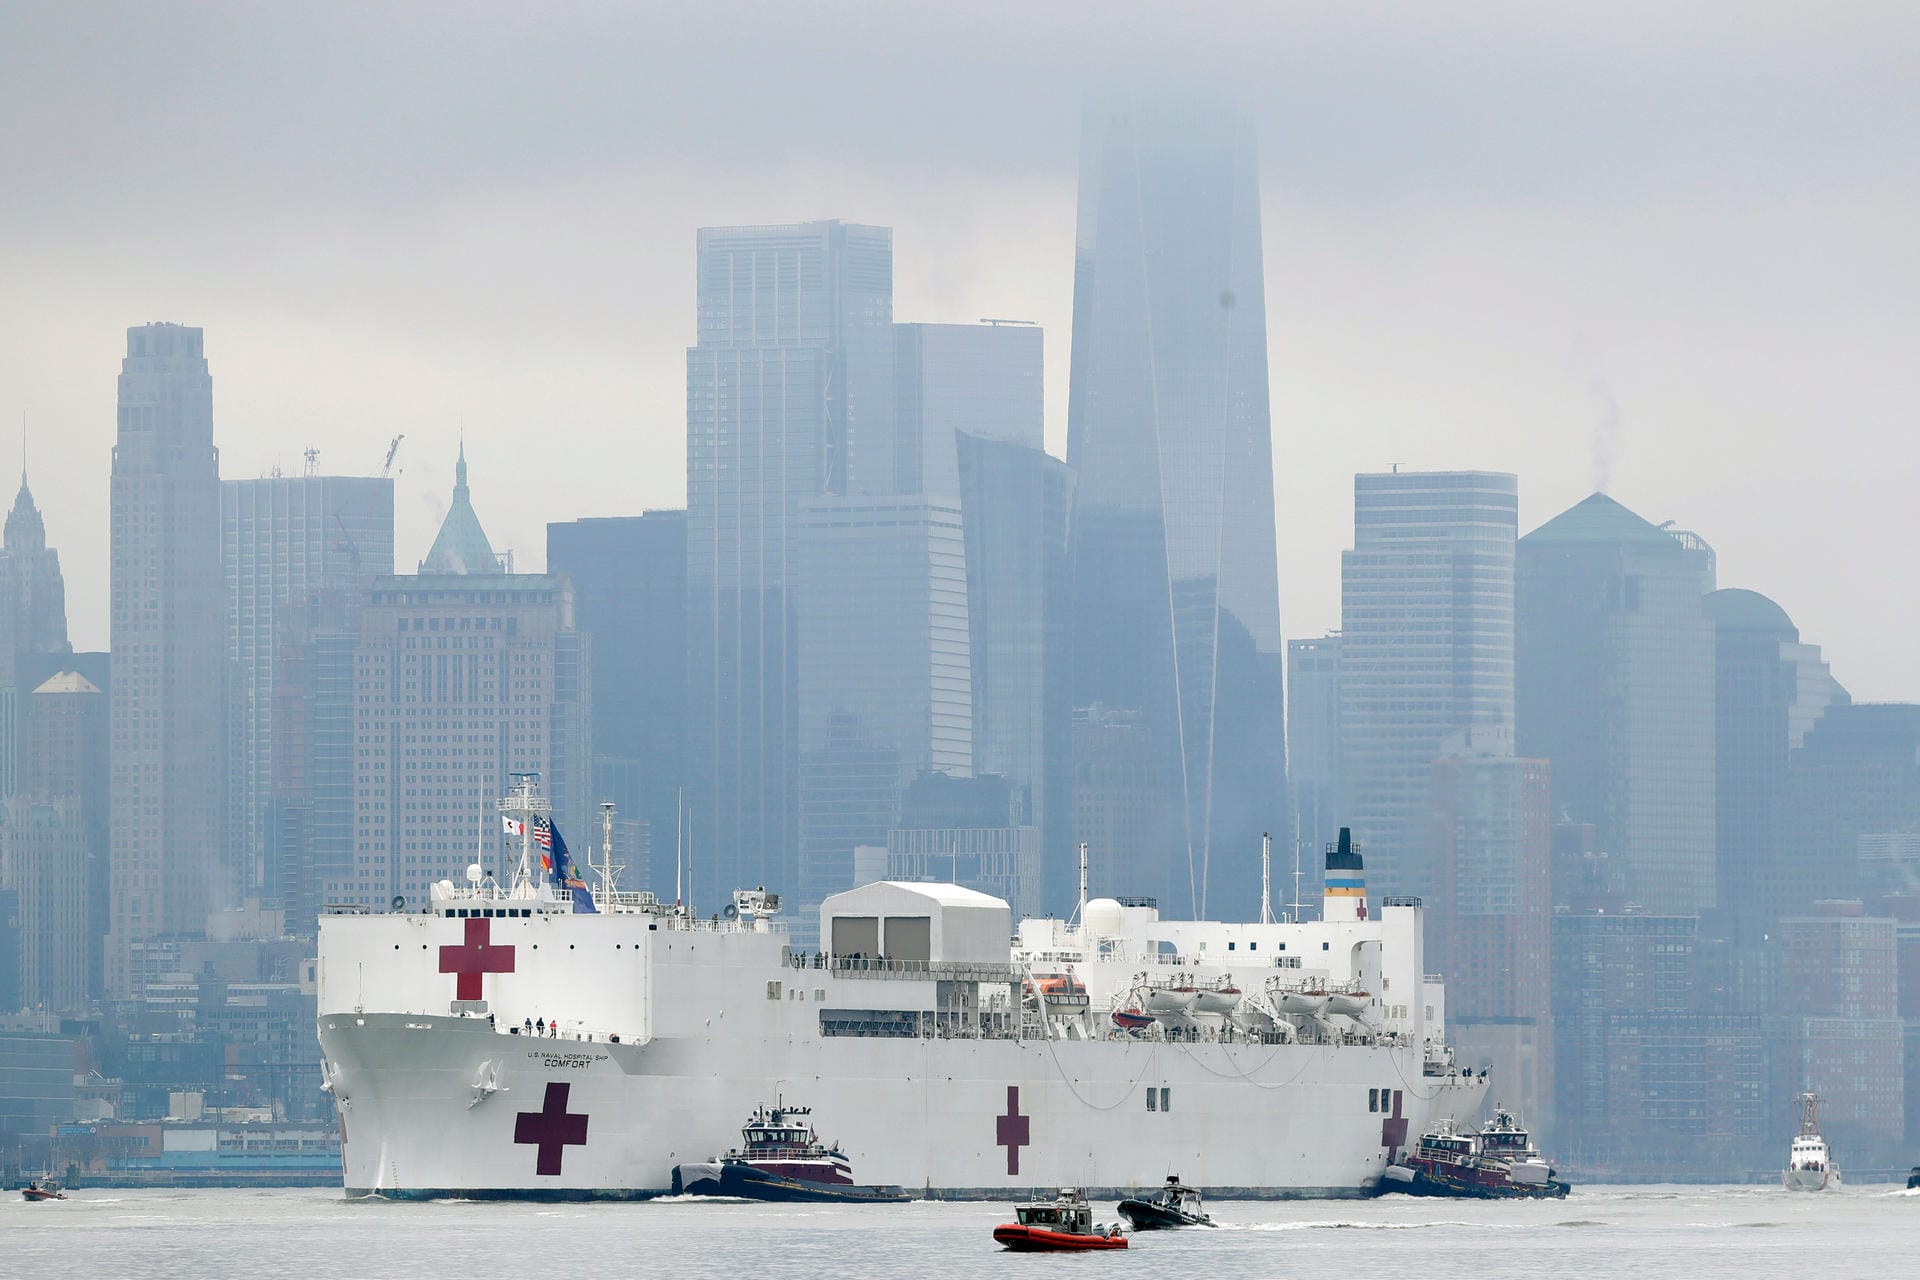 Das Lazarettschiff "USNS Comfort" läuft in New York City ein, um die Krankenhäuser zu entlasten. Die Ausbreitung des Corona-Virus hat auch schwere wirtschaftliche Folgen. Donald Trump sagt am 24, März: "Das Heilmittel darf nicht schlimmer sein als die Krankheit."